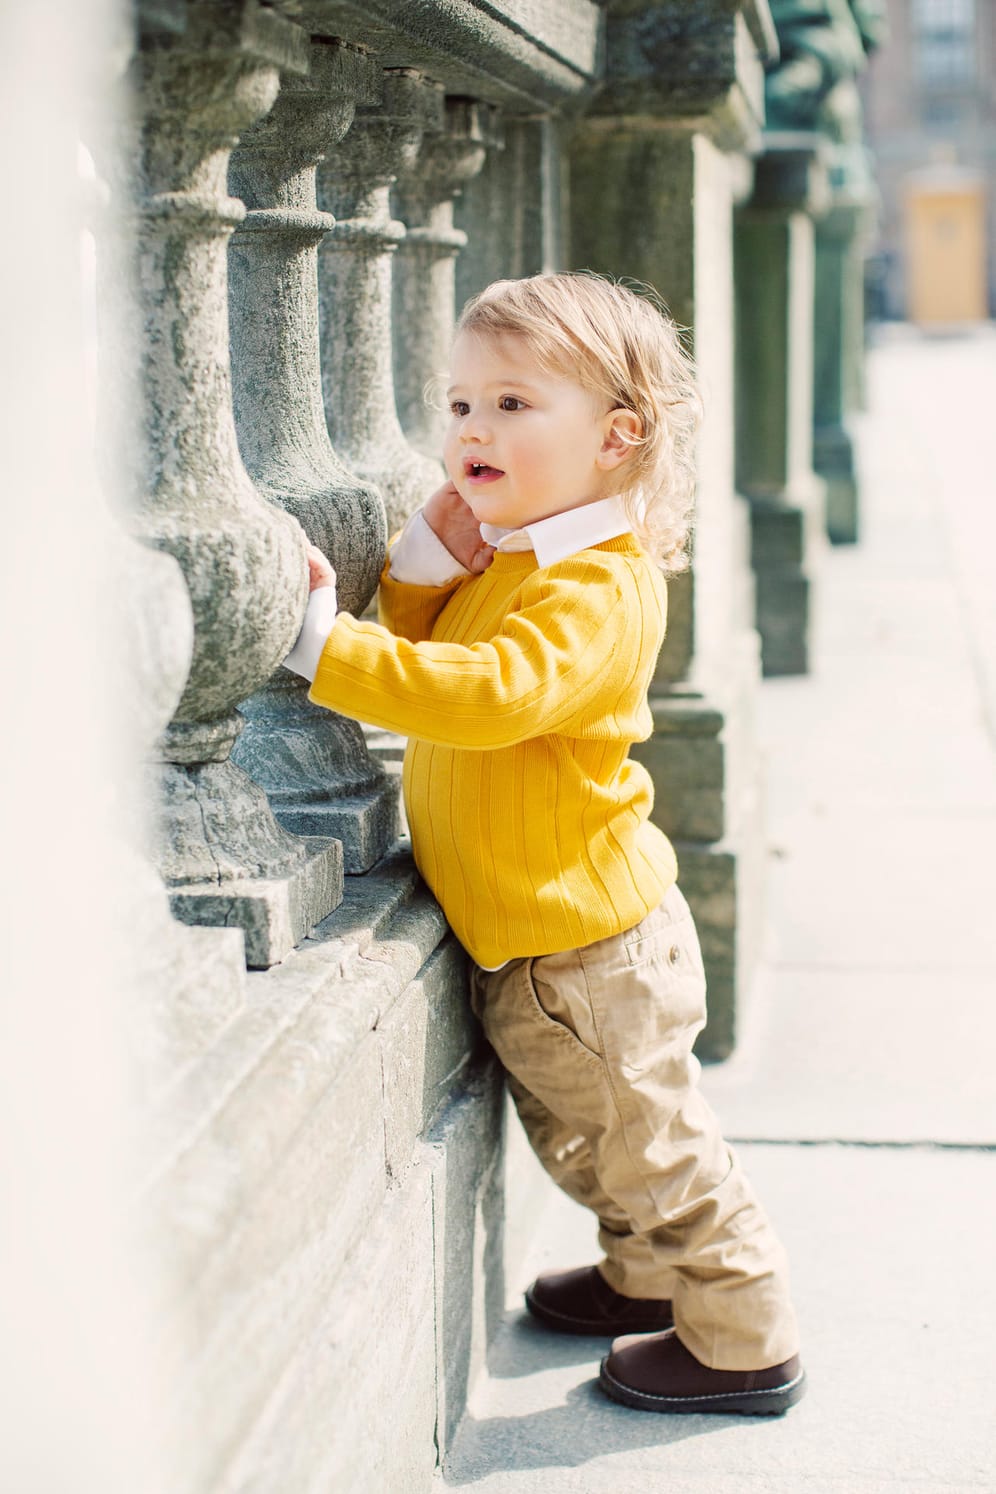 Prinz Alexander von Schweden: Der älteste Sohn von Prinz Carl Philip und Prinzessin Sofia wurde am 19. April 2016 geboren.